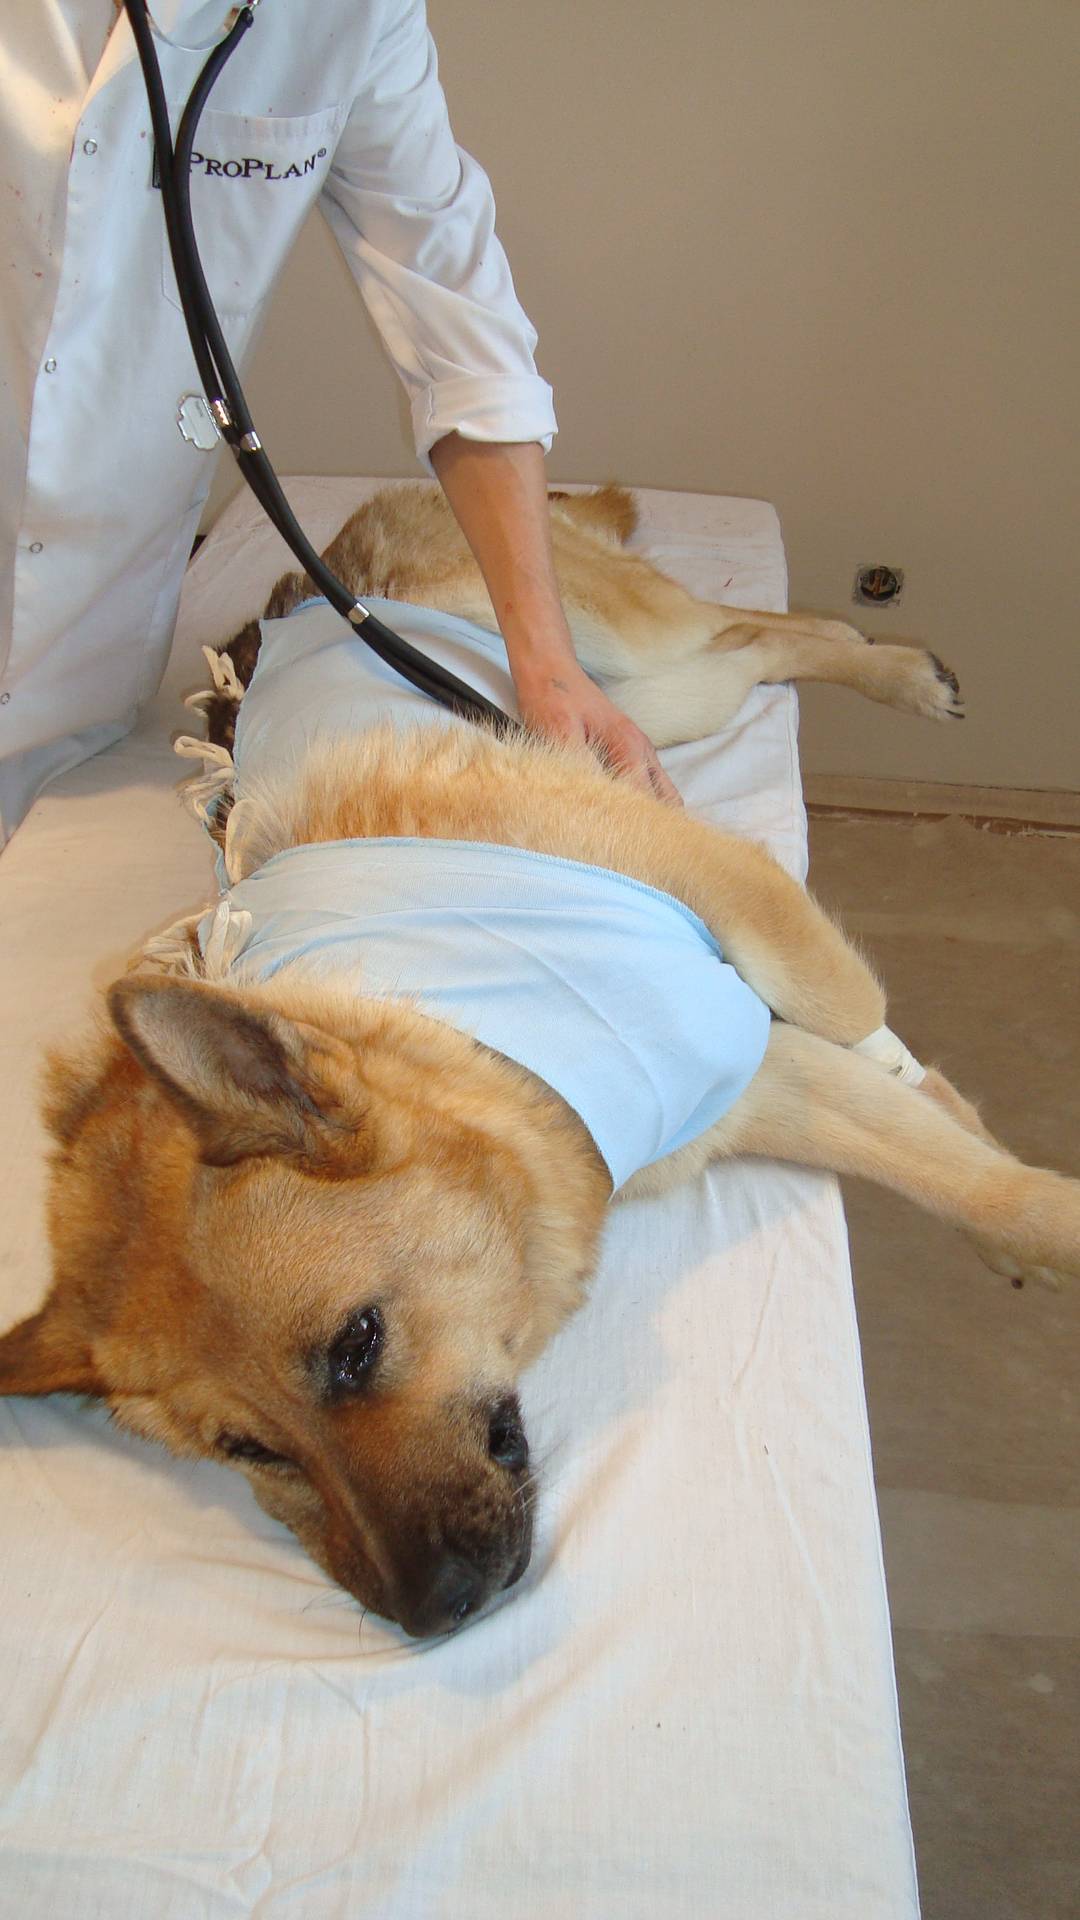 Стерилизация собак - преимущества и недостатки, подготовка к стерилизации и методы проведения, а также послеоперационный уход за собакой